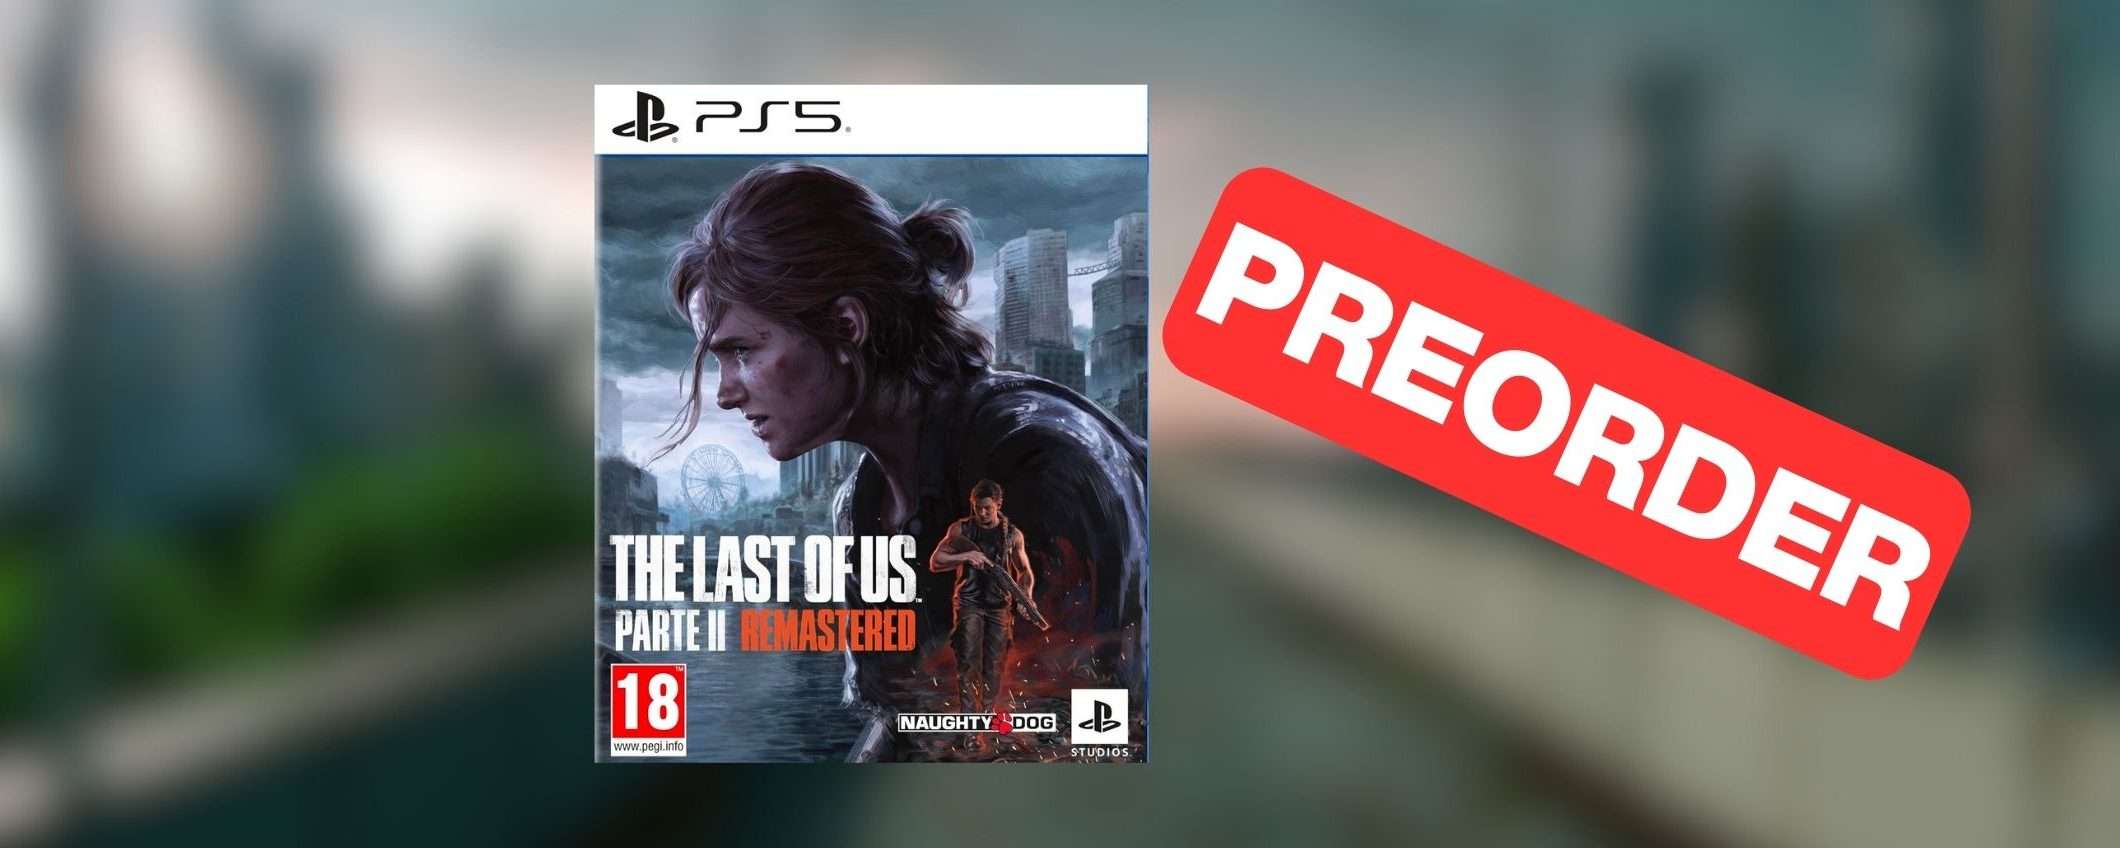 The Last of Us Parte II Remastered su Amazon: prenotalo subito al MIGLIOR PREZZO